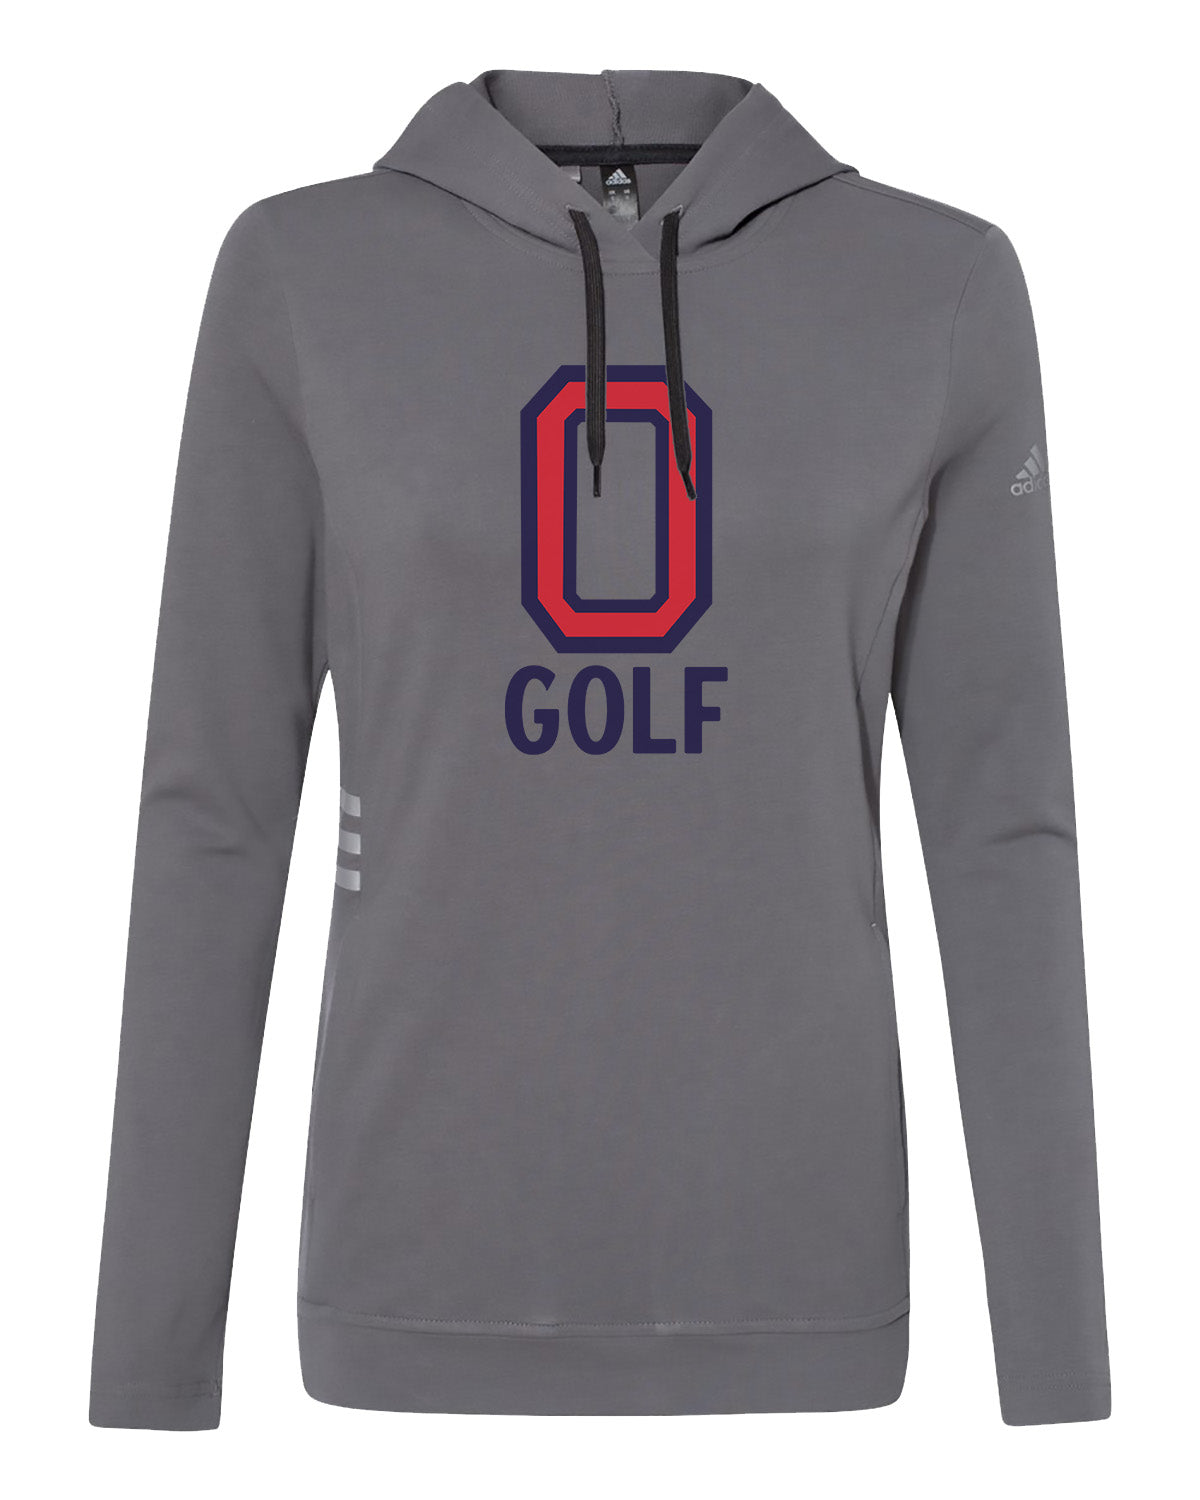 Orono Golf // Women's Lightweight Hoodie - Adidas